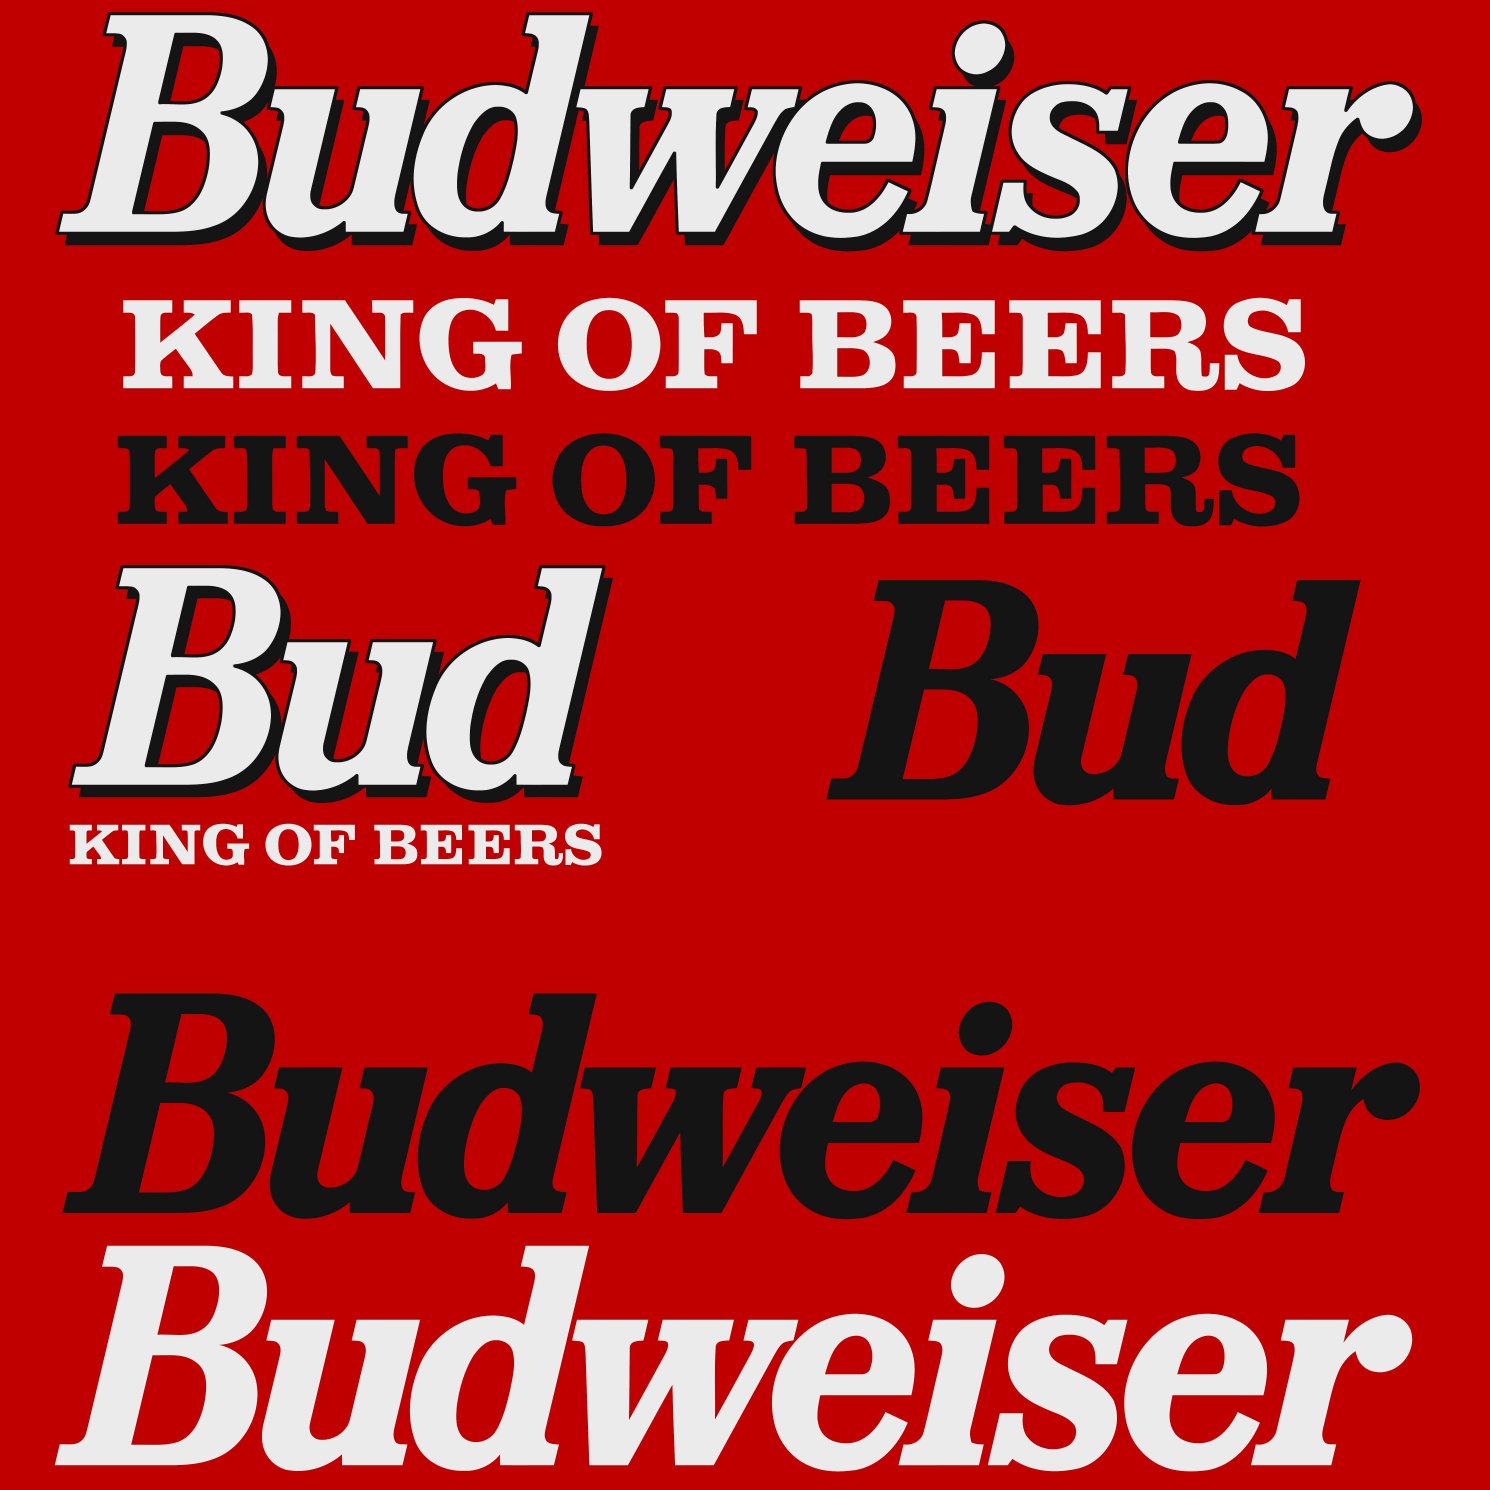 budweiser king of beers.jpg